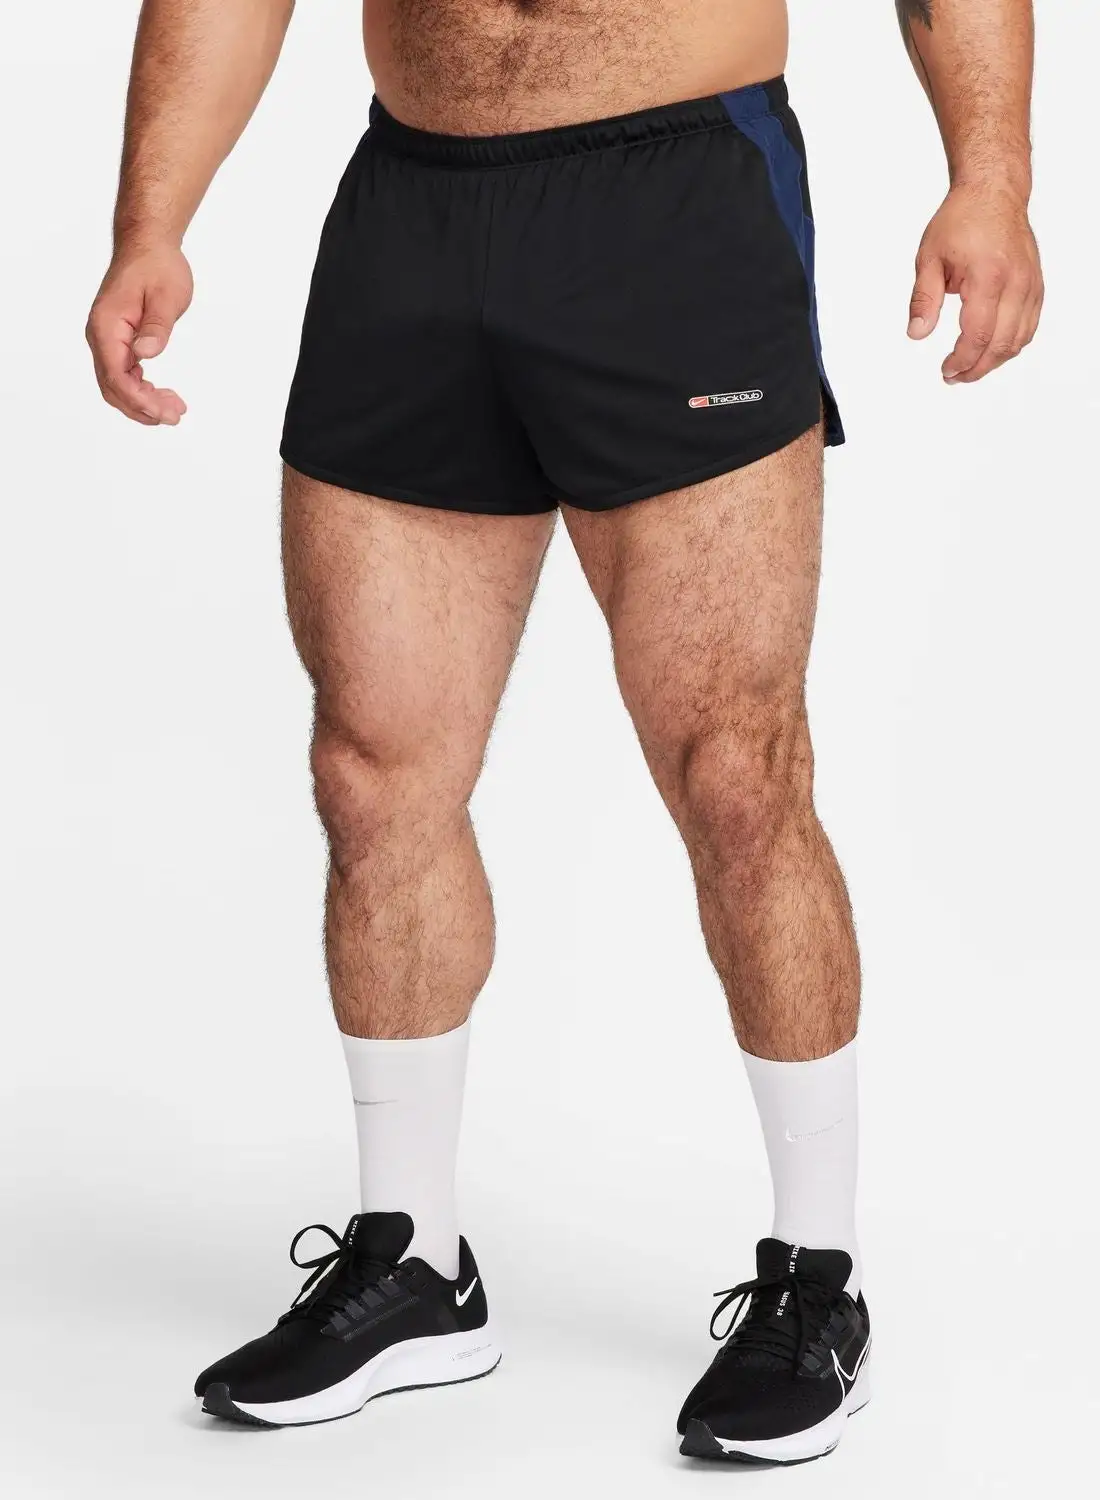 Nike Dryfit Track Club 3Inbf Shorts